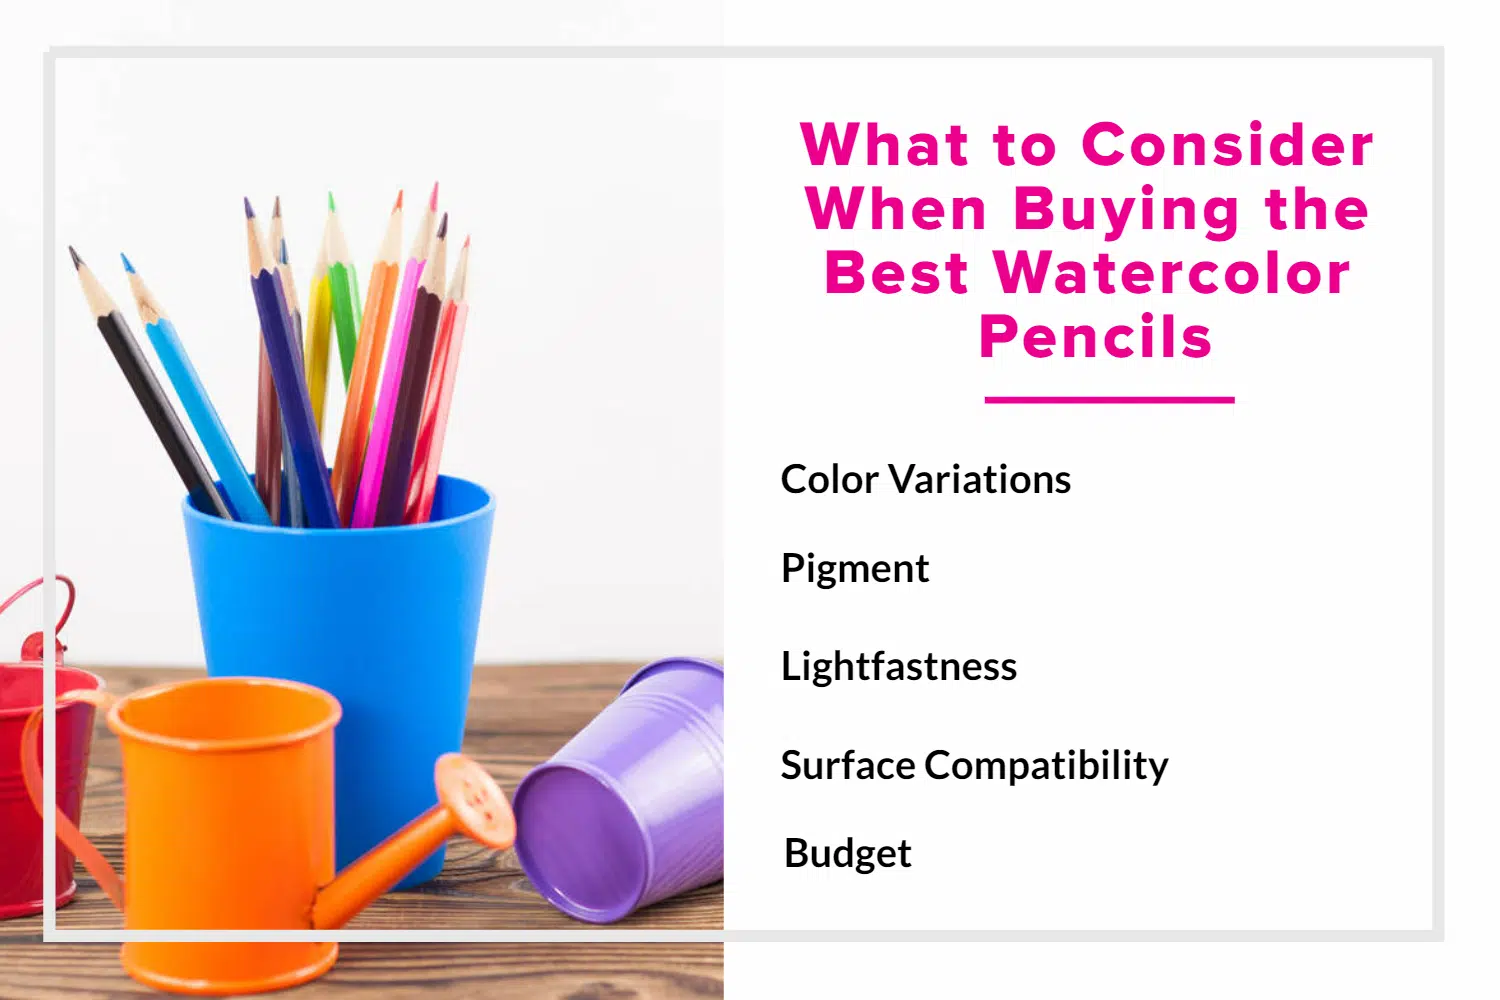 Watercolor Pencils 101: Techniques, Advantages, and Best Choices